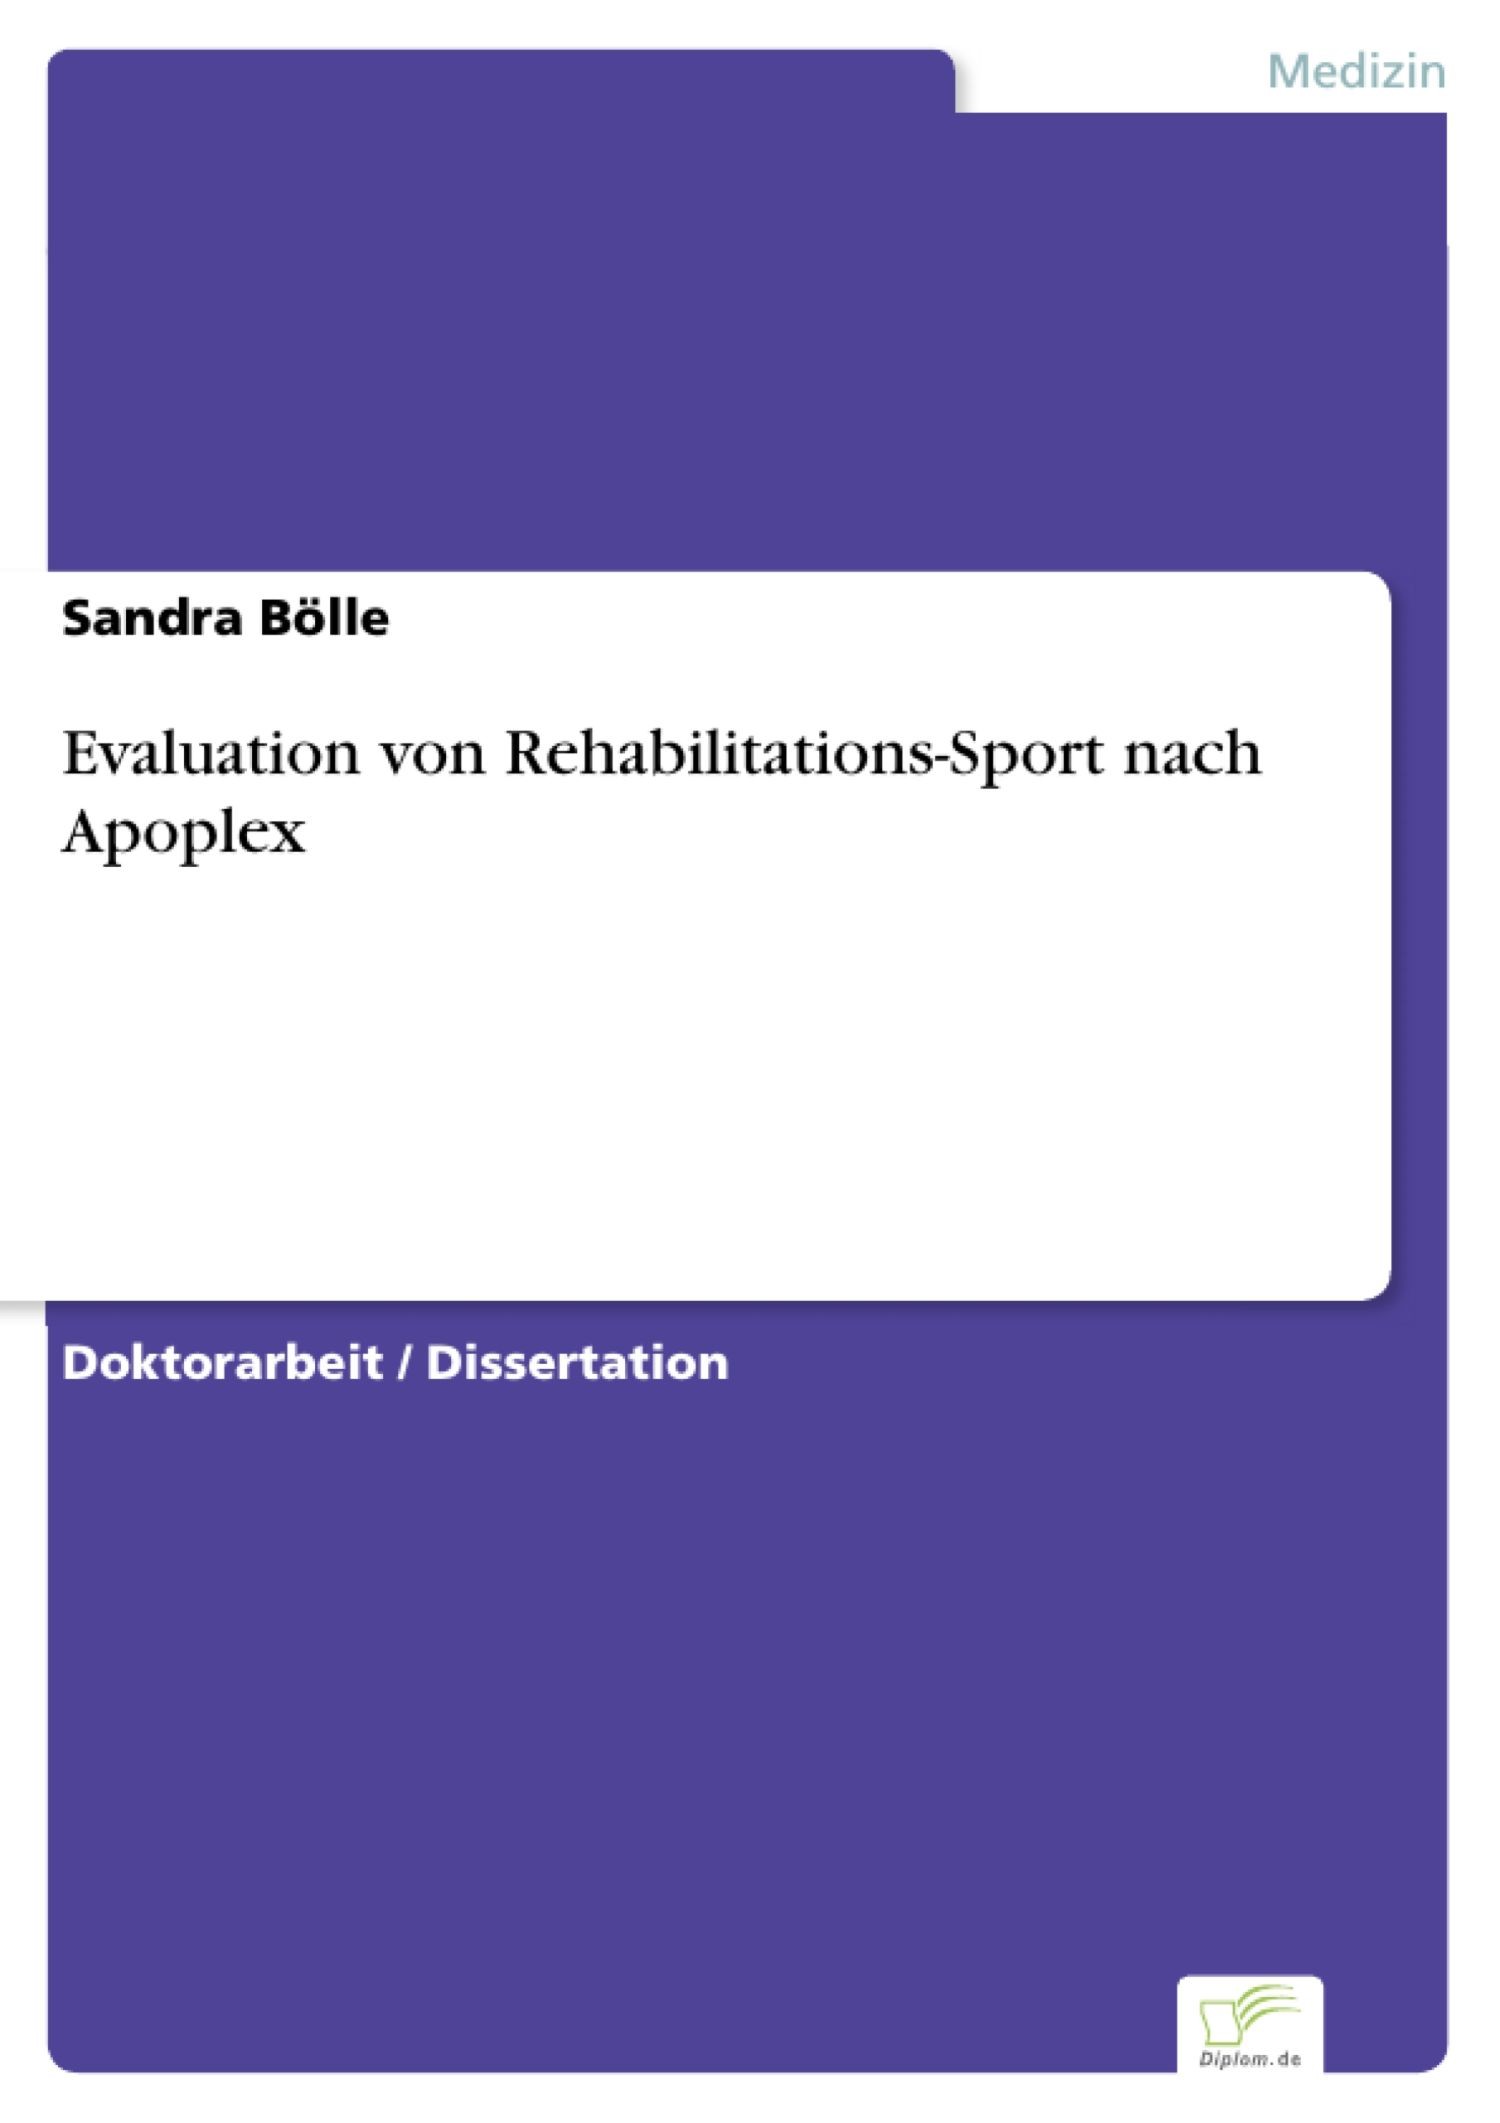 Evaluation von Rehabilitations-Sport nach Apoplex